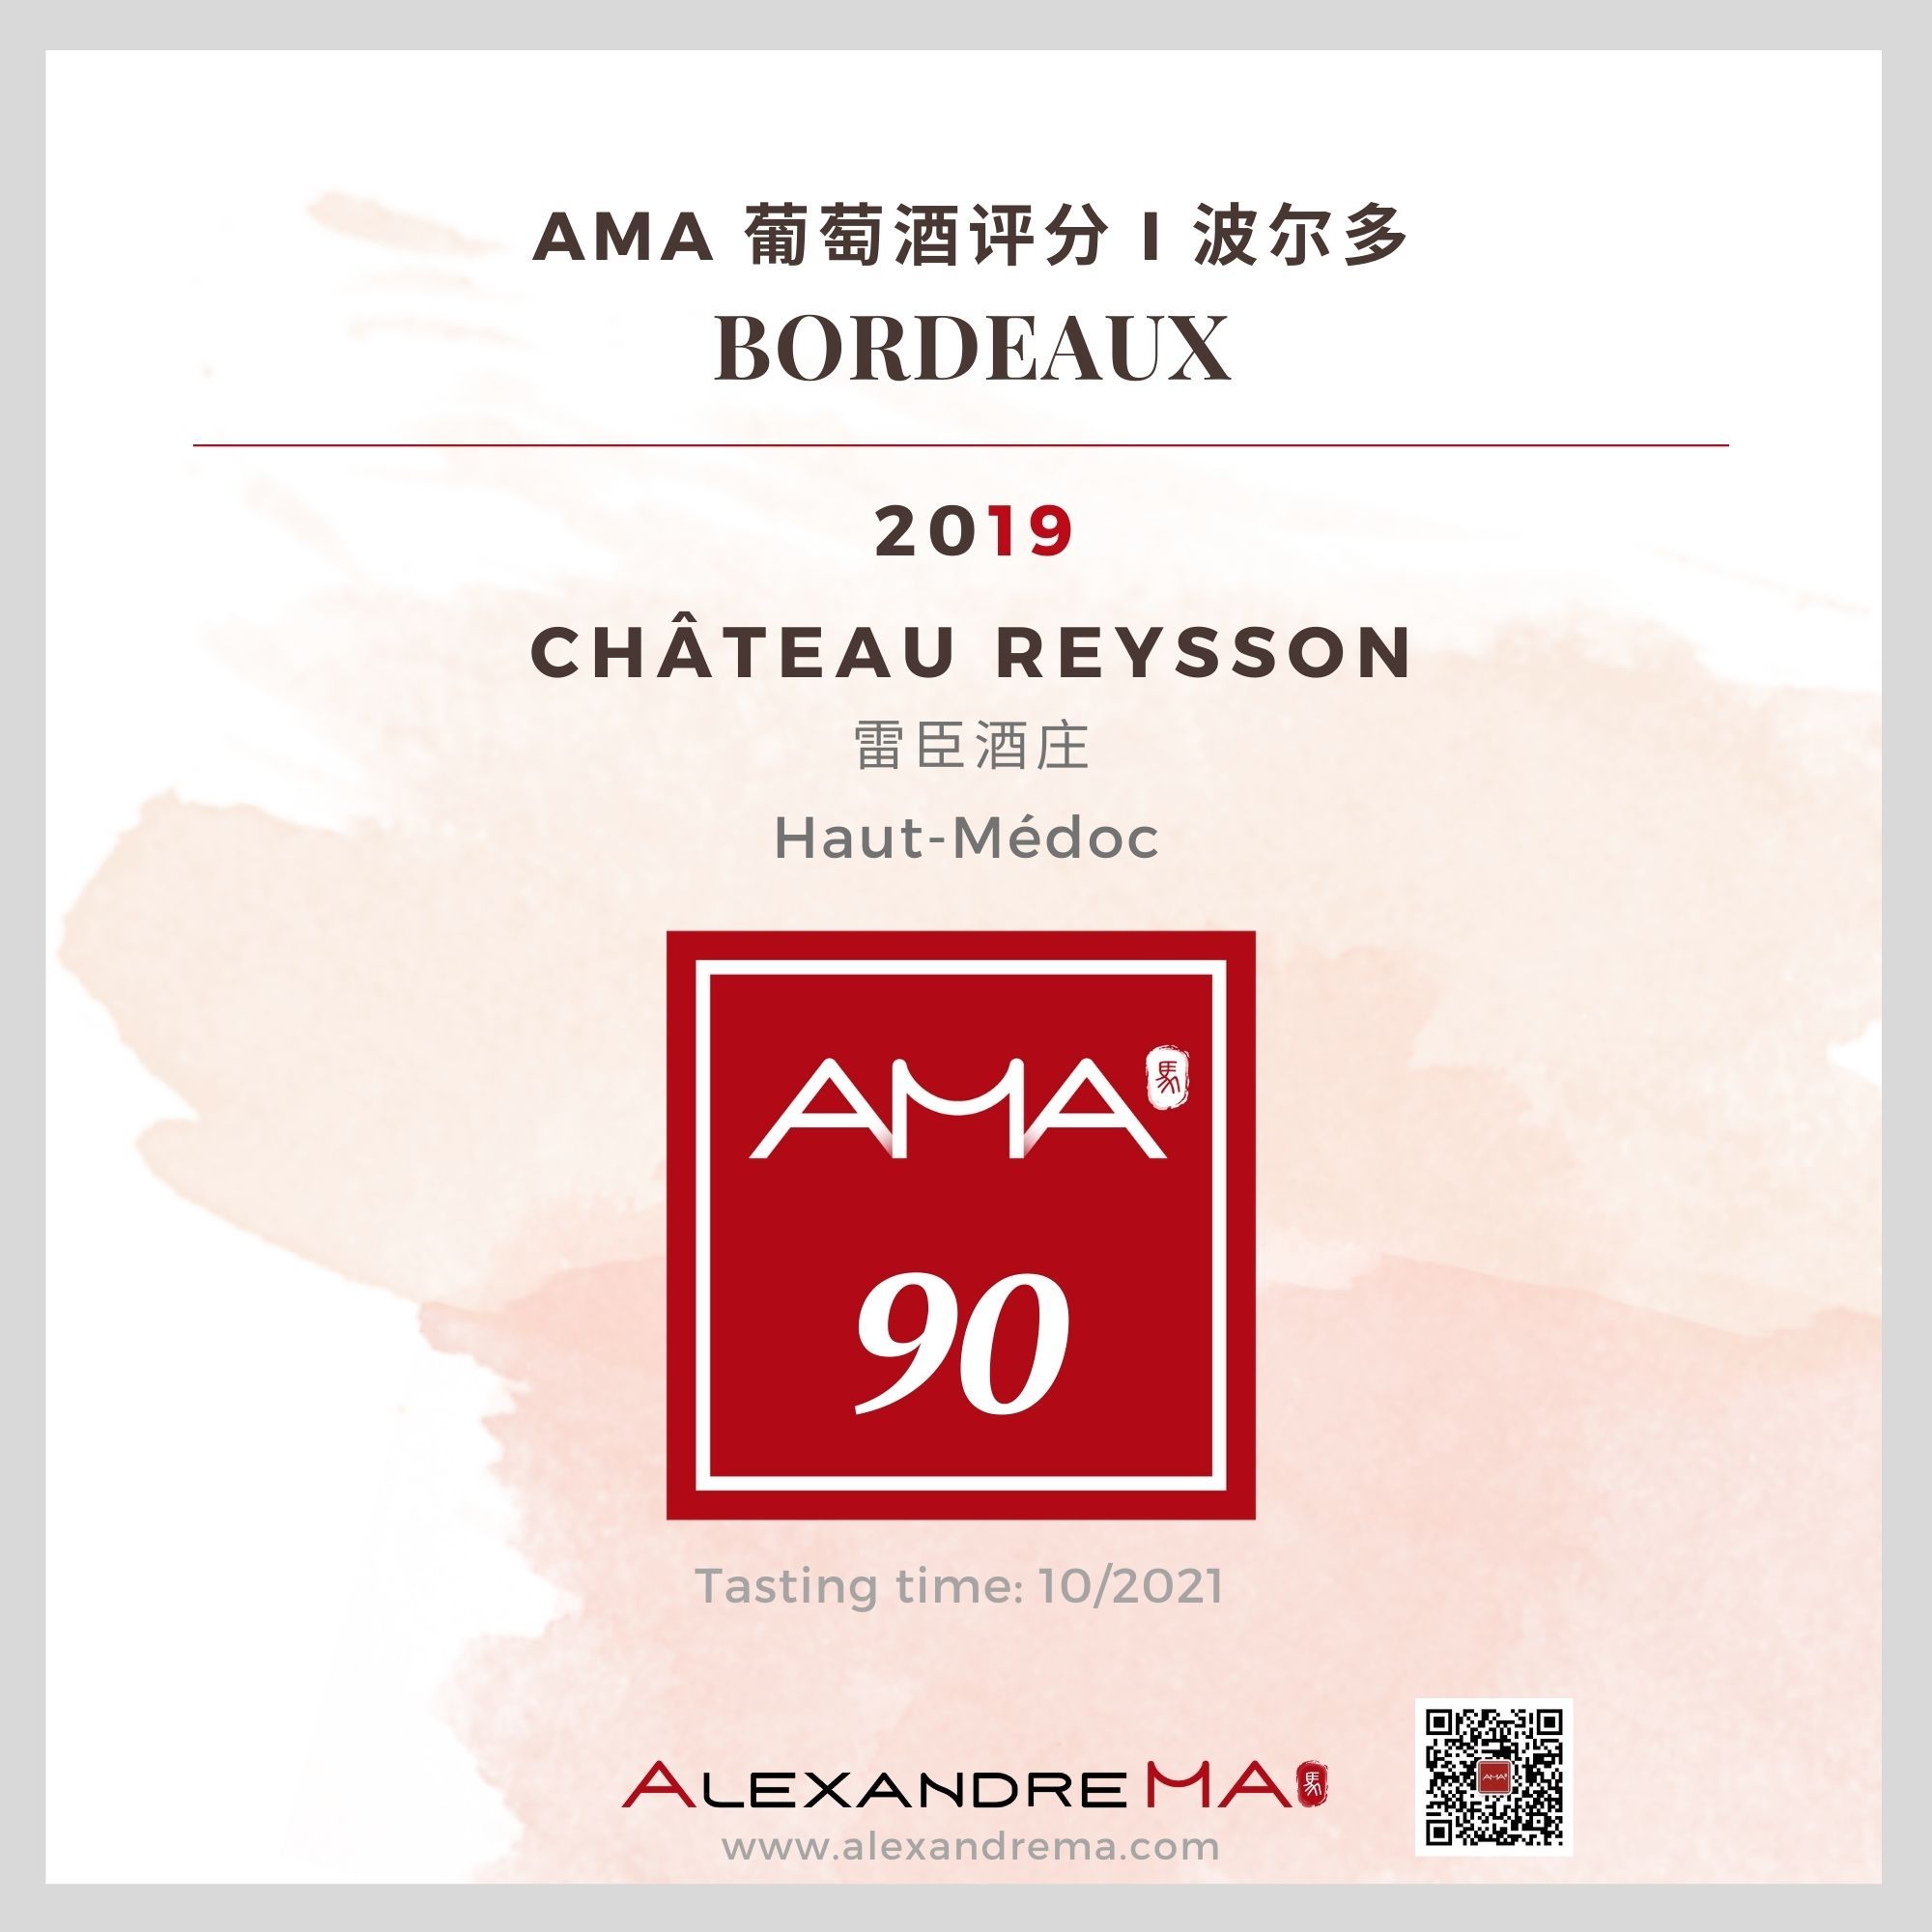 Château Reysson 2019 雷臣酒庄 - Alexandre Ma